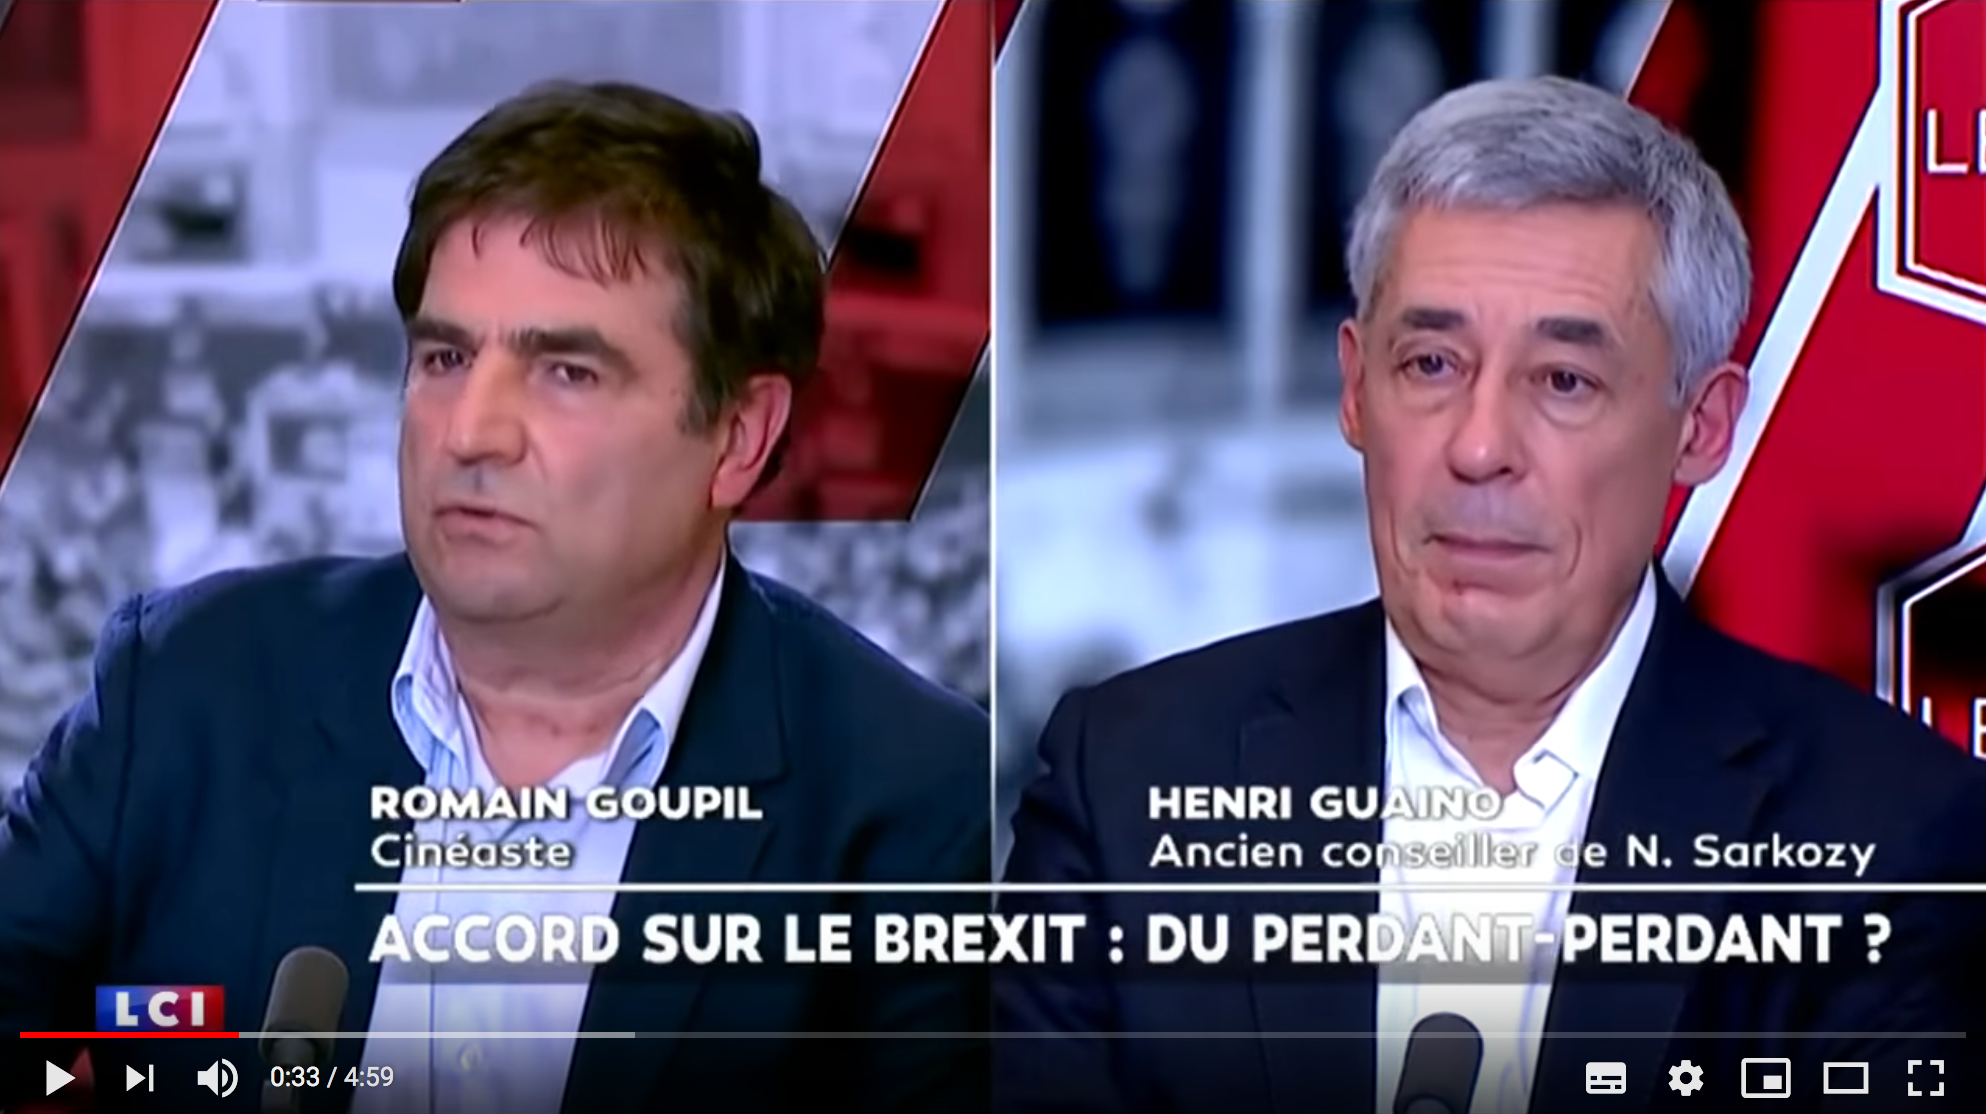 Romain Goupil crie au scandale sur le Brexit et se fait recadrer par Henri Guaino (VIDÉO)